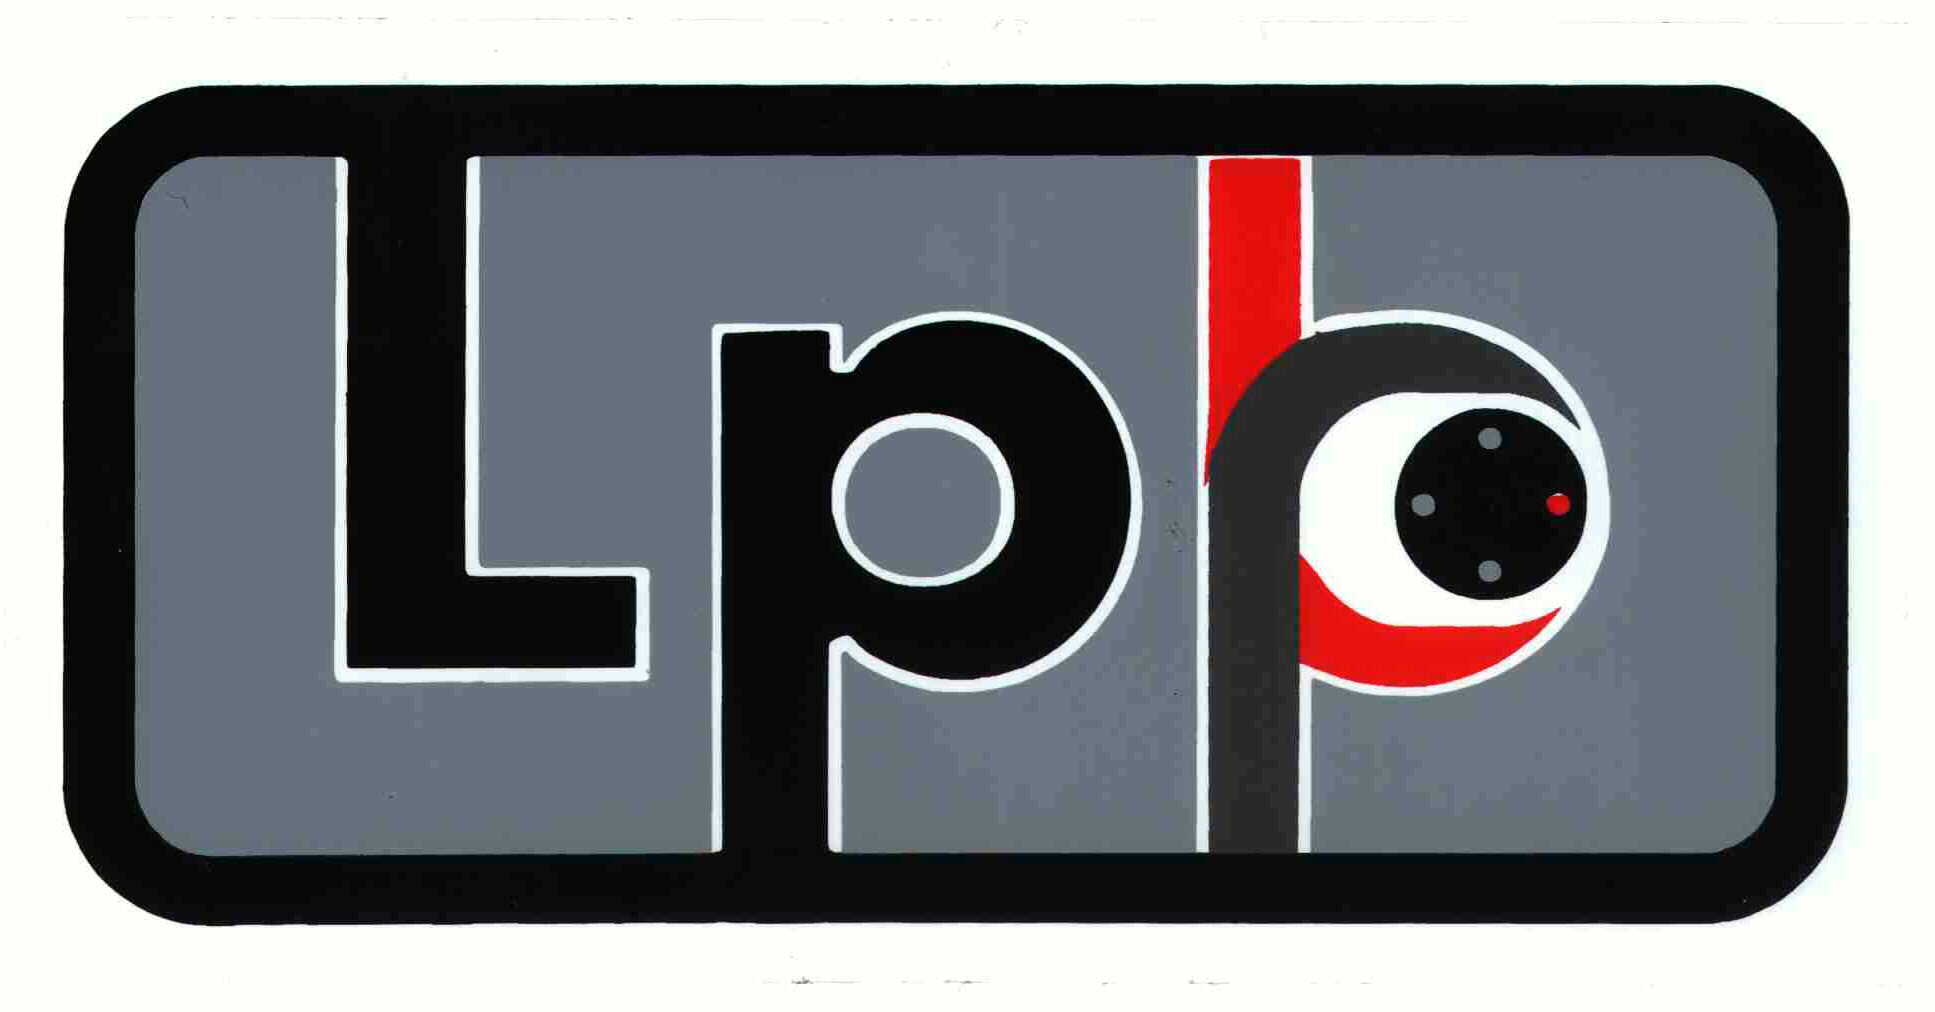 Trademark Logo LPP